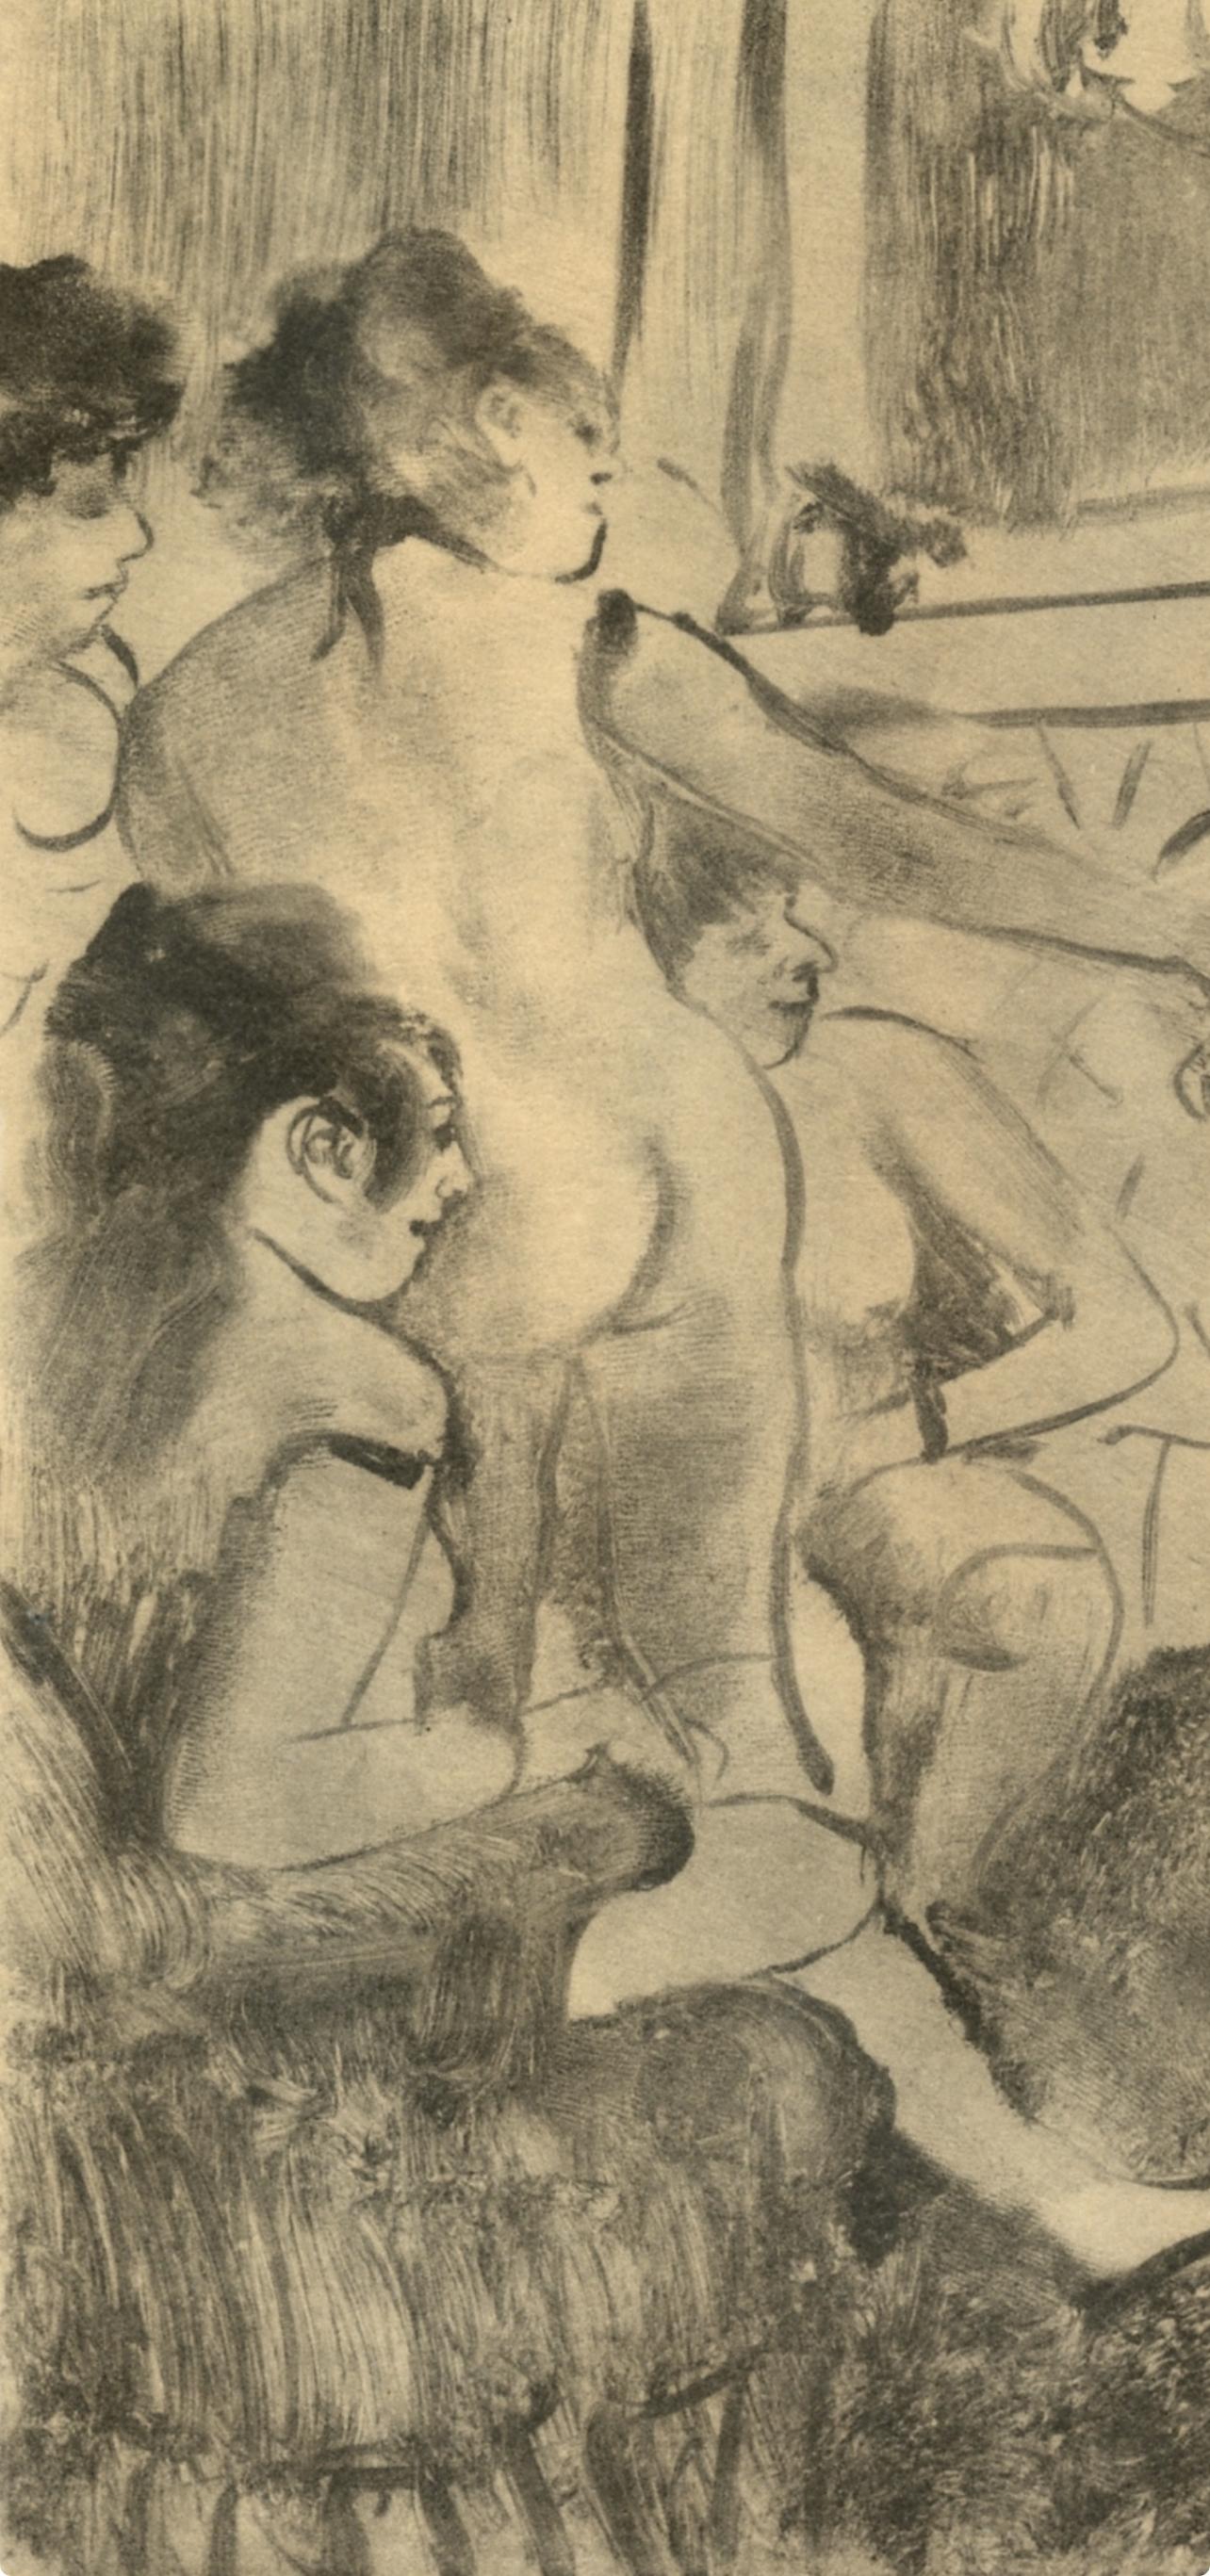 Degas, Un Client serieux, Les Monotypes (after) - Print by Edgar Degas